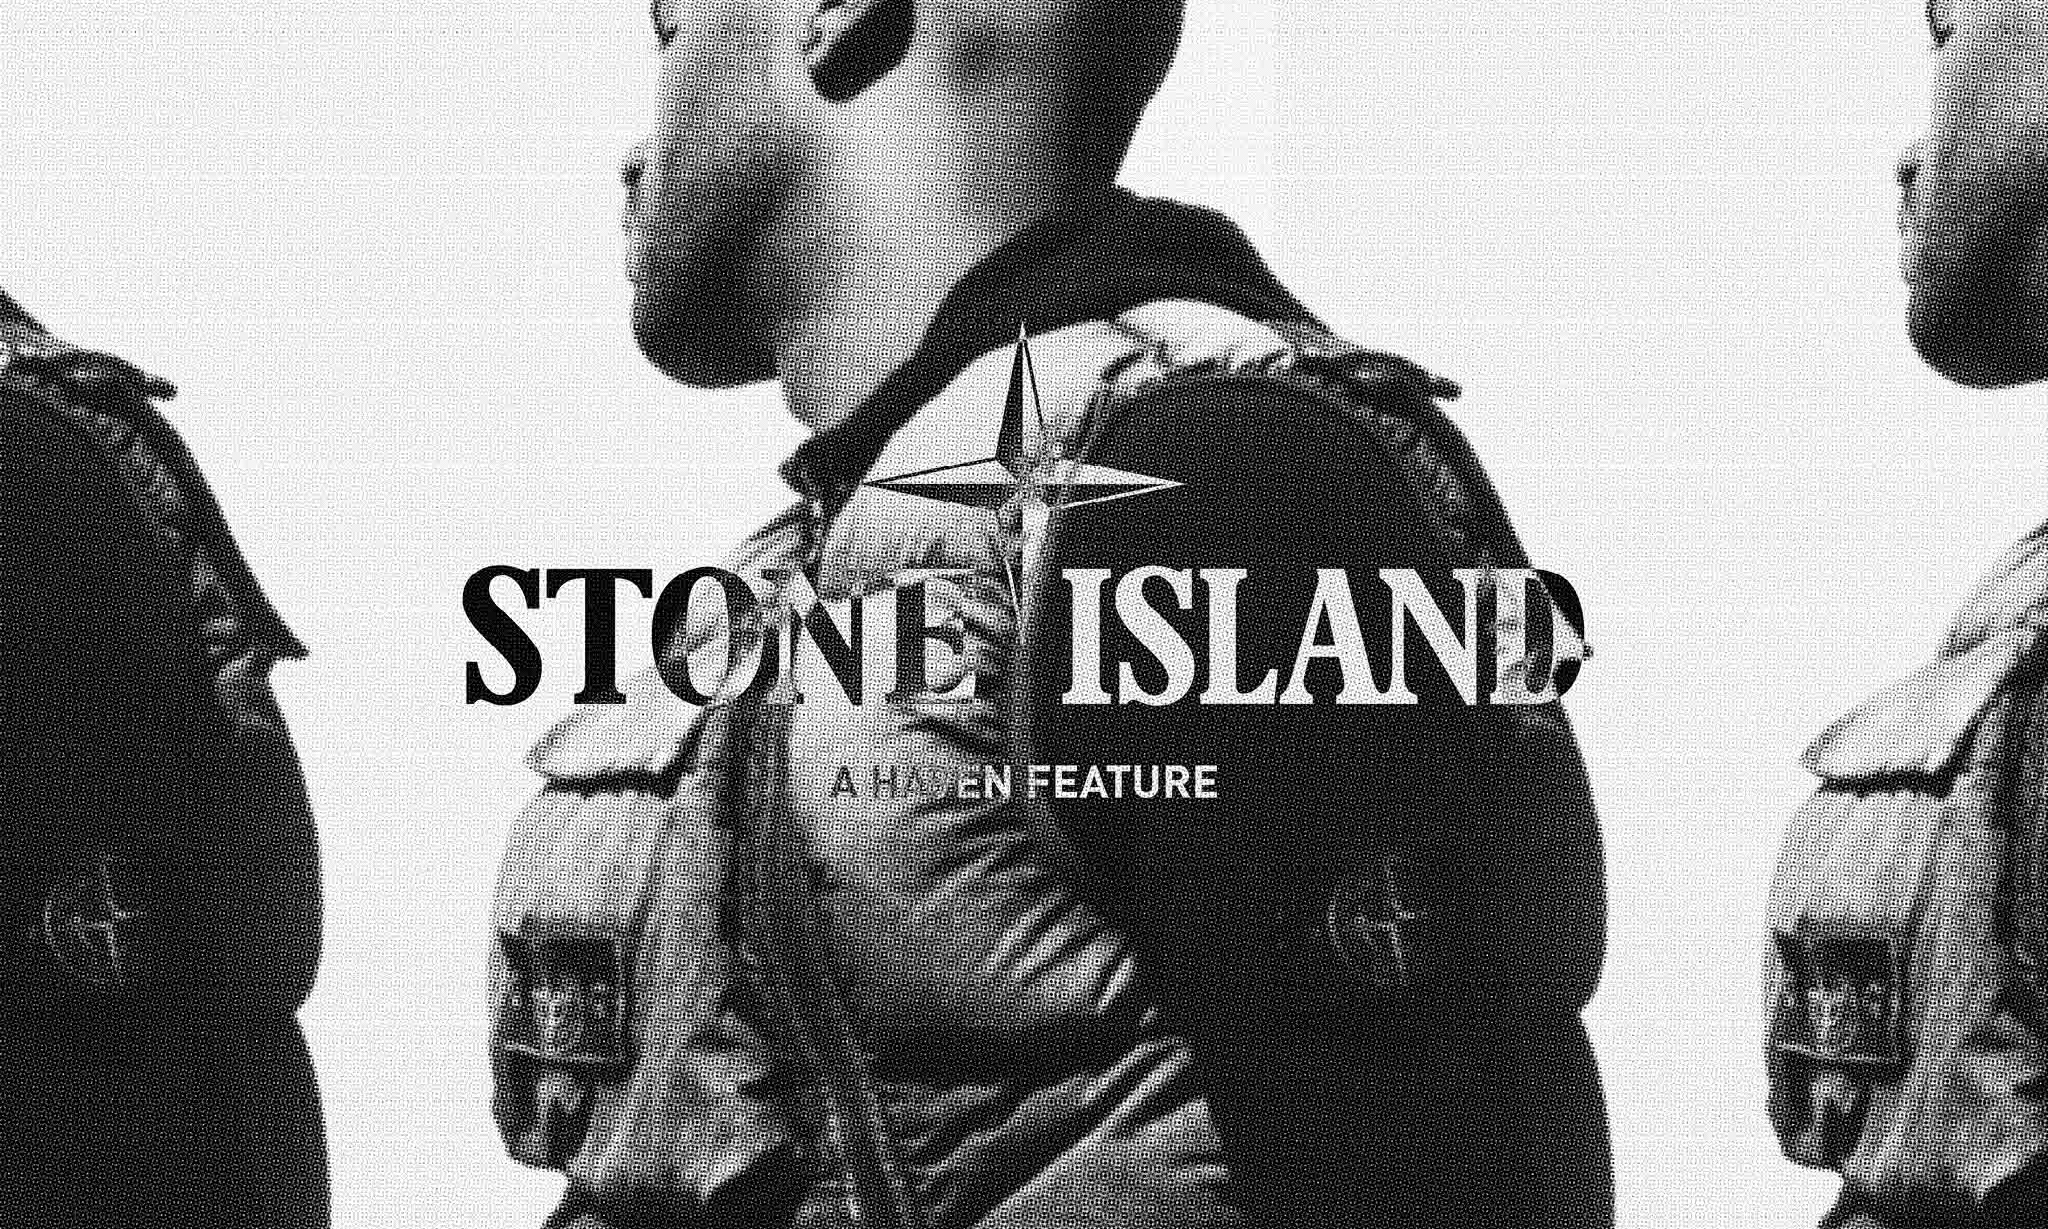 HAVEN 发布 Stone Island 造型特辑